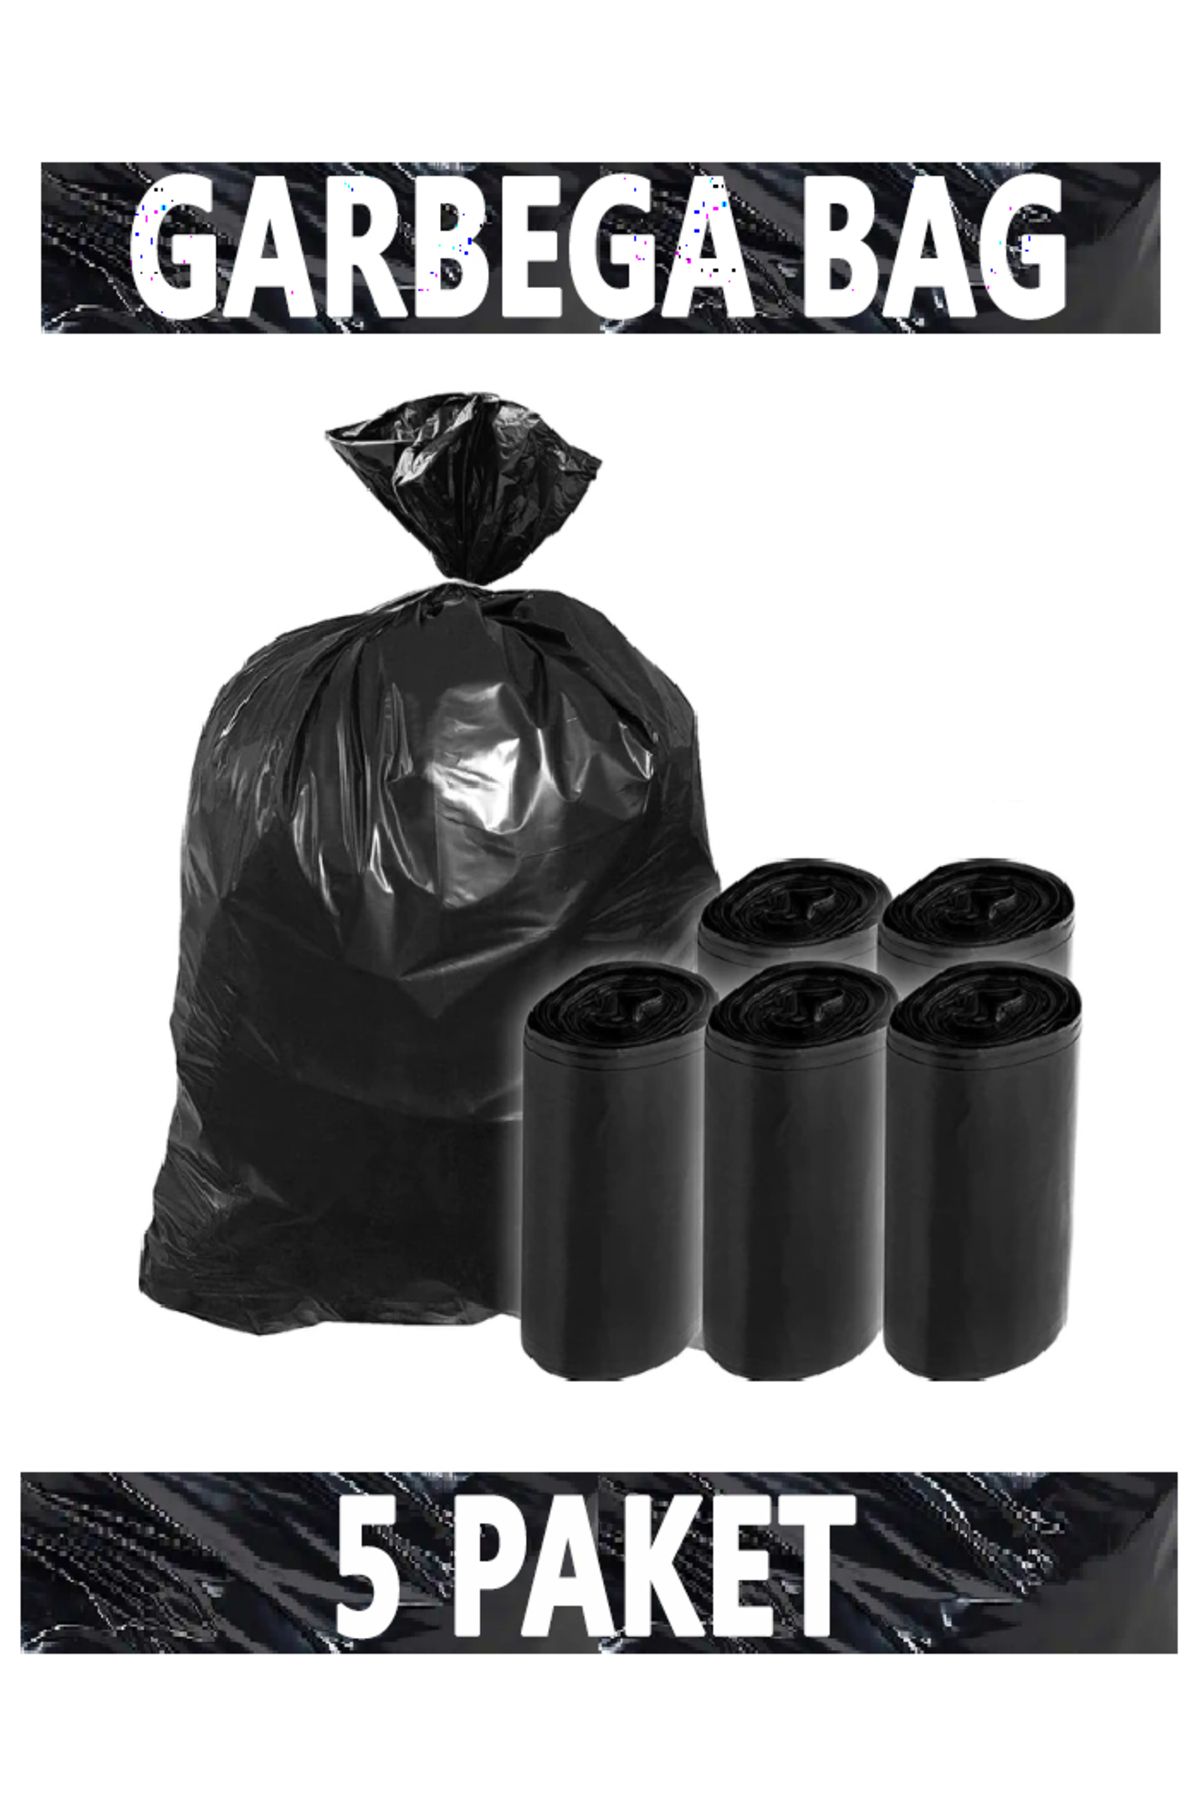 Aksaray İpek Temizlik Ambalaj Siyah Çöp Poşeti Jumbo Kalın 80x110 Cm 400 gr 5 Paket 50 Adet